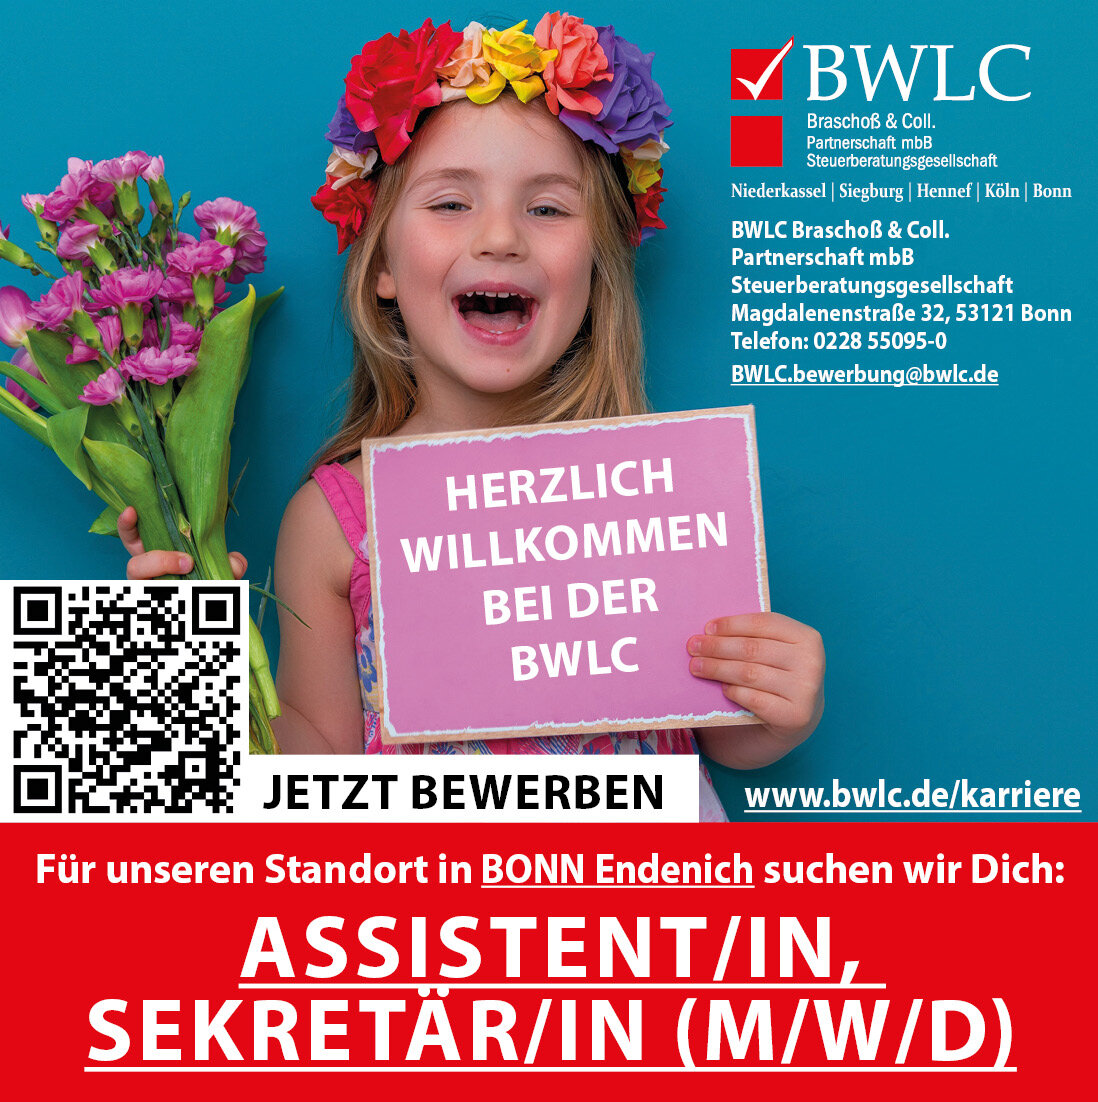 BWLC Braschoß & Coll. Partnerschaft mbB Steuerberatungsgesellschaft, Eschmarer Straße 53 in Niederkassel